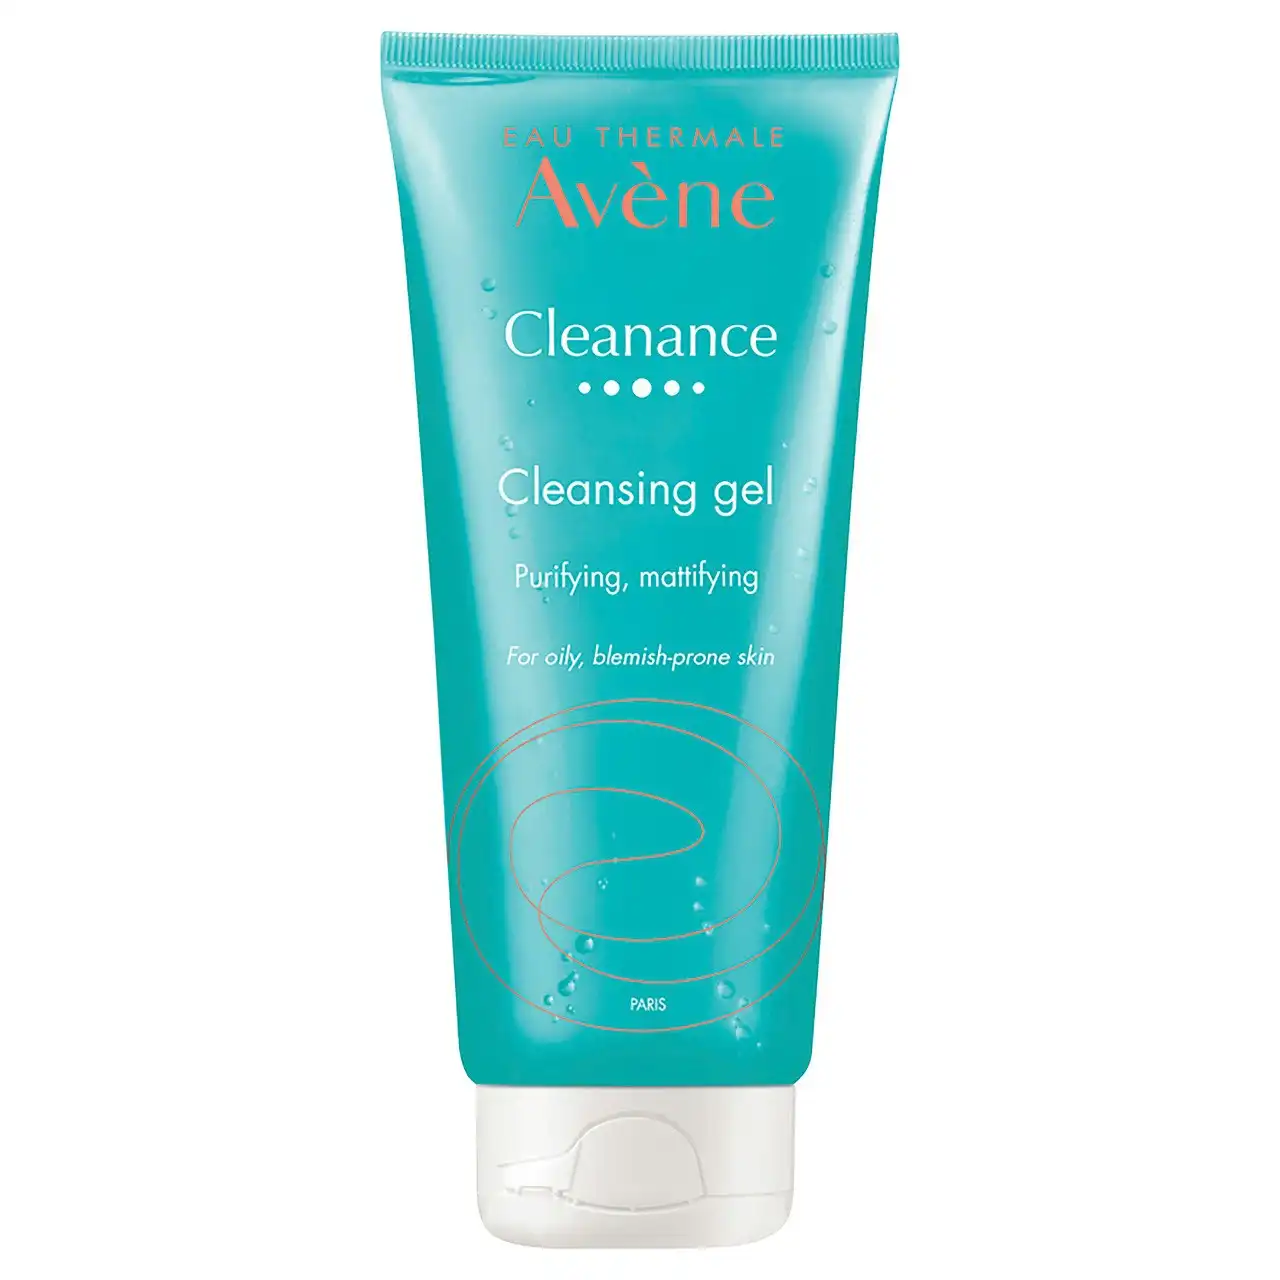 Av ne Cleanance Cleansing Gel 200ml - Cleanser for Oily skin